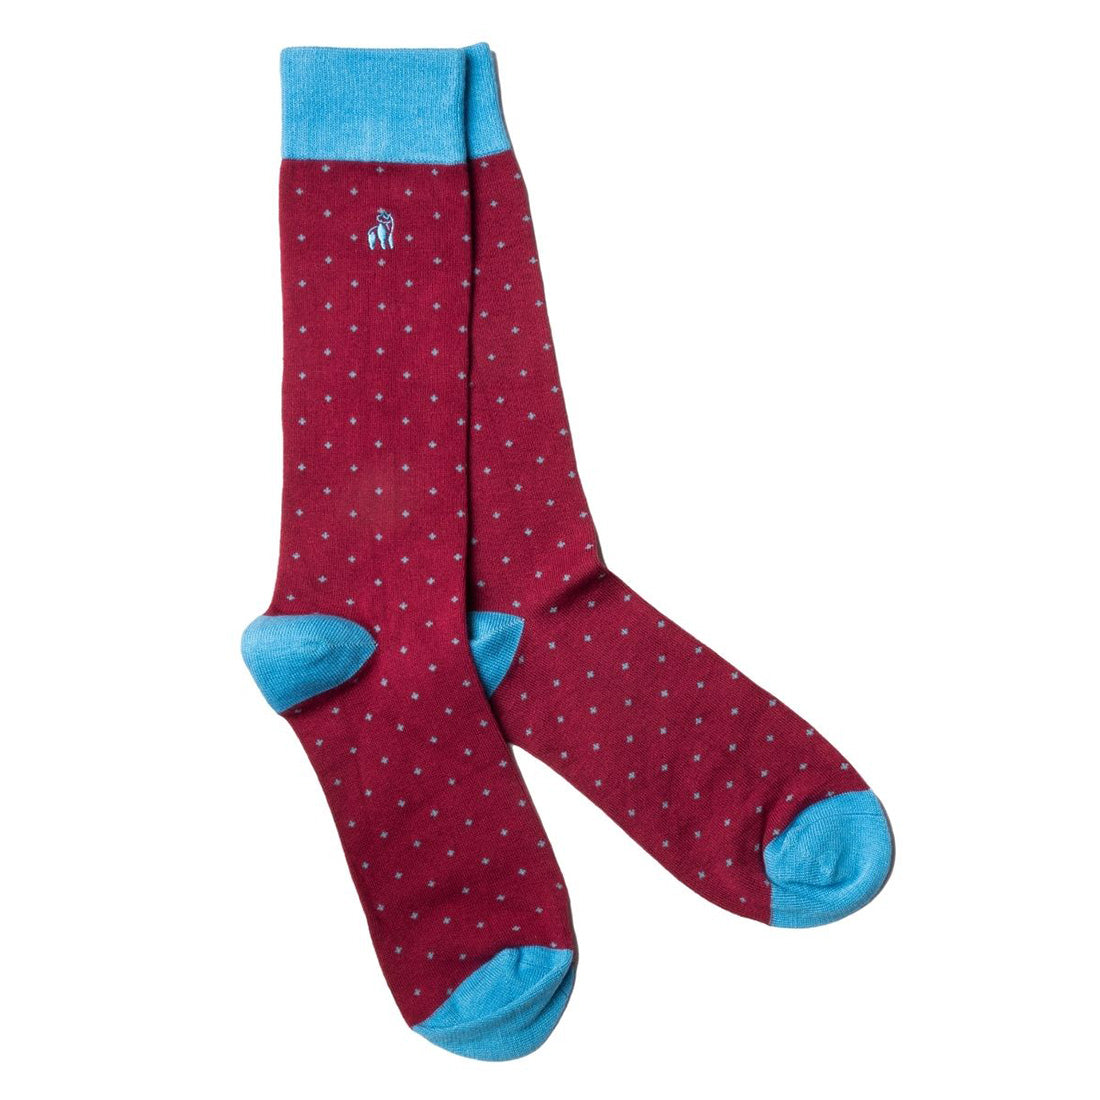 socks-spotted-burgundy-bamboo-socks-1_7894799a-cdbc-44bb-bf39-ddfe8503af70.jpg